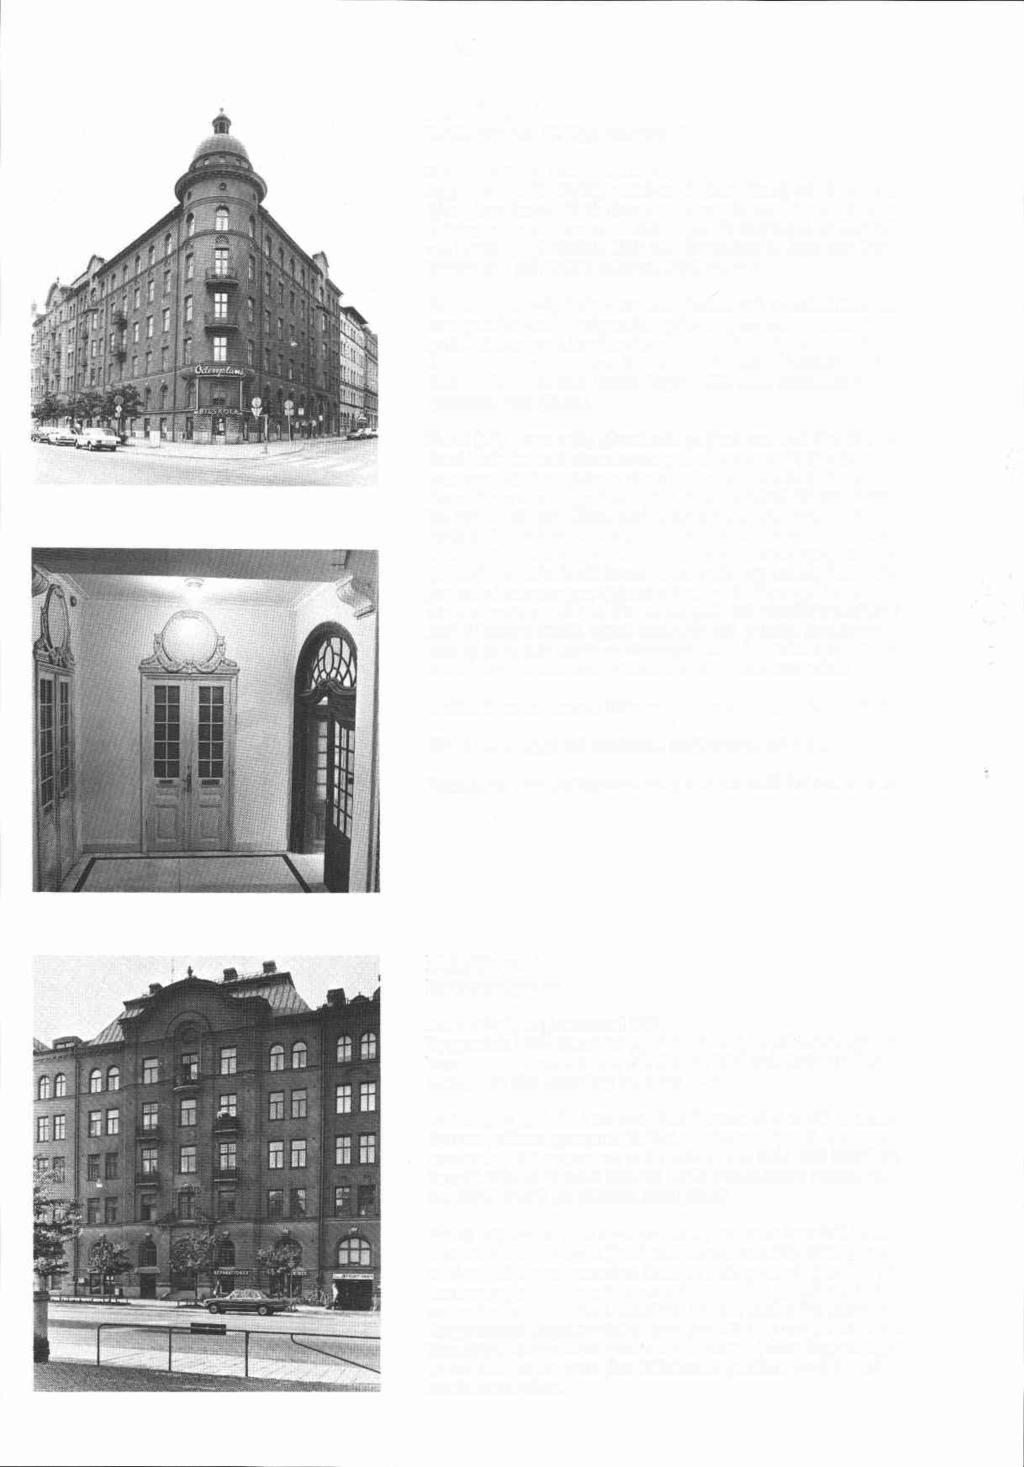 Bliiklinten 1 Karlbergsvägen 18, Upplandsgatan 57 Byggnadsår 1901-02(03), arkitekter O Holm (fasad) och E Bosuöm (plan), byggherre L G Nordenström, byggmastare O Holm.